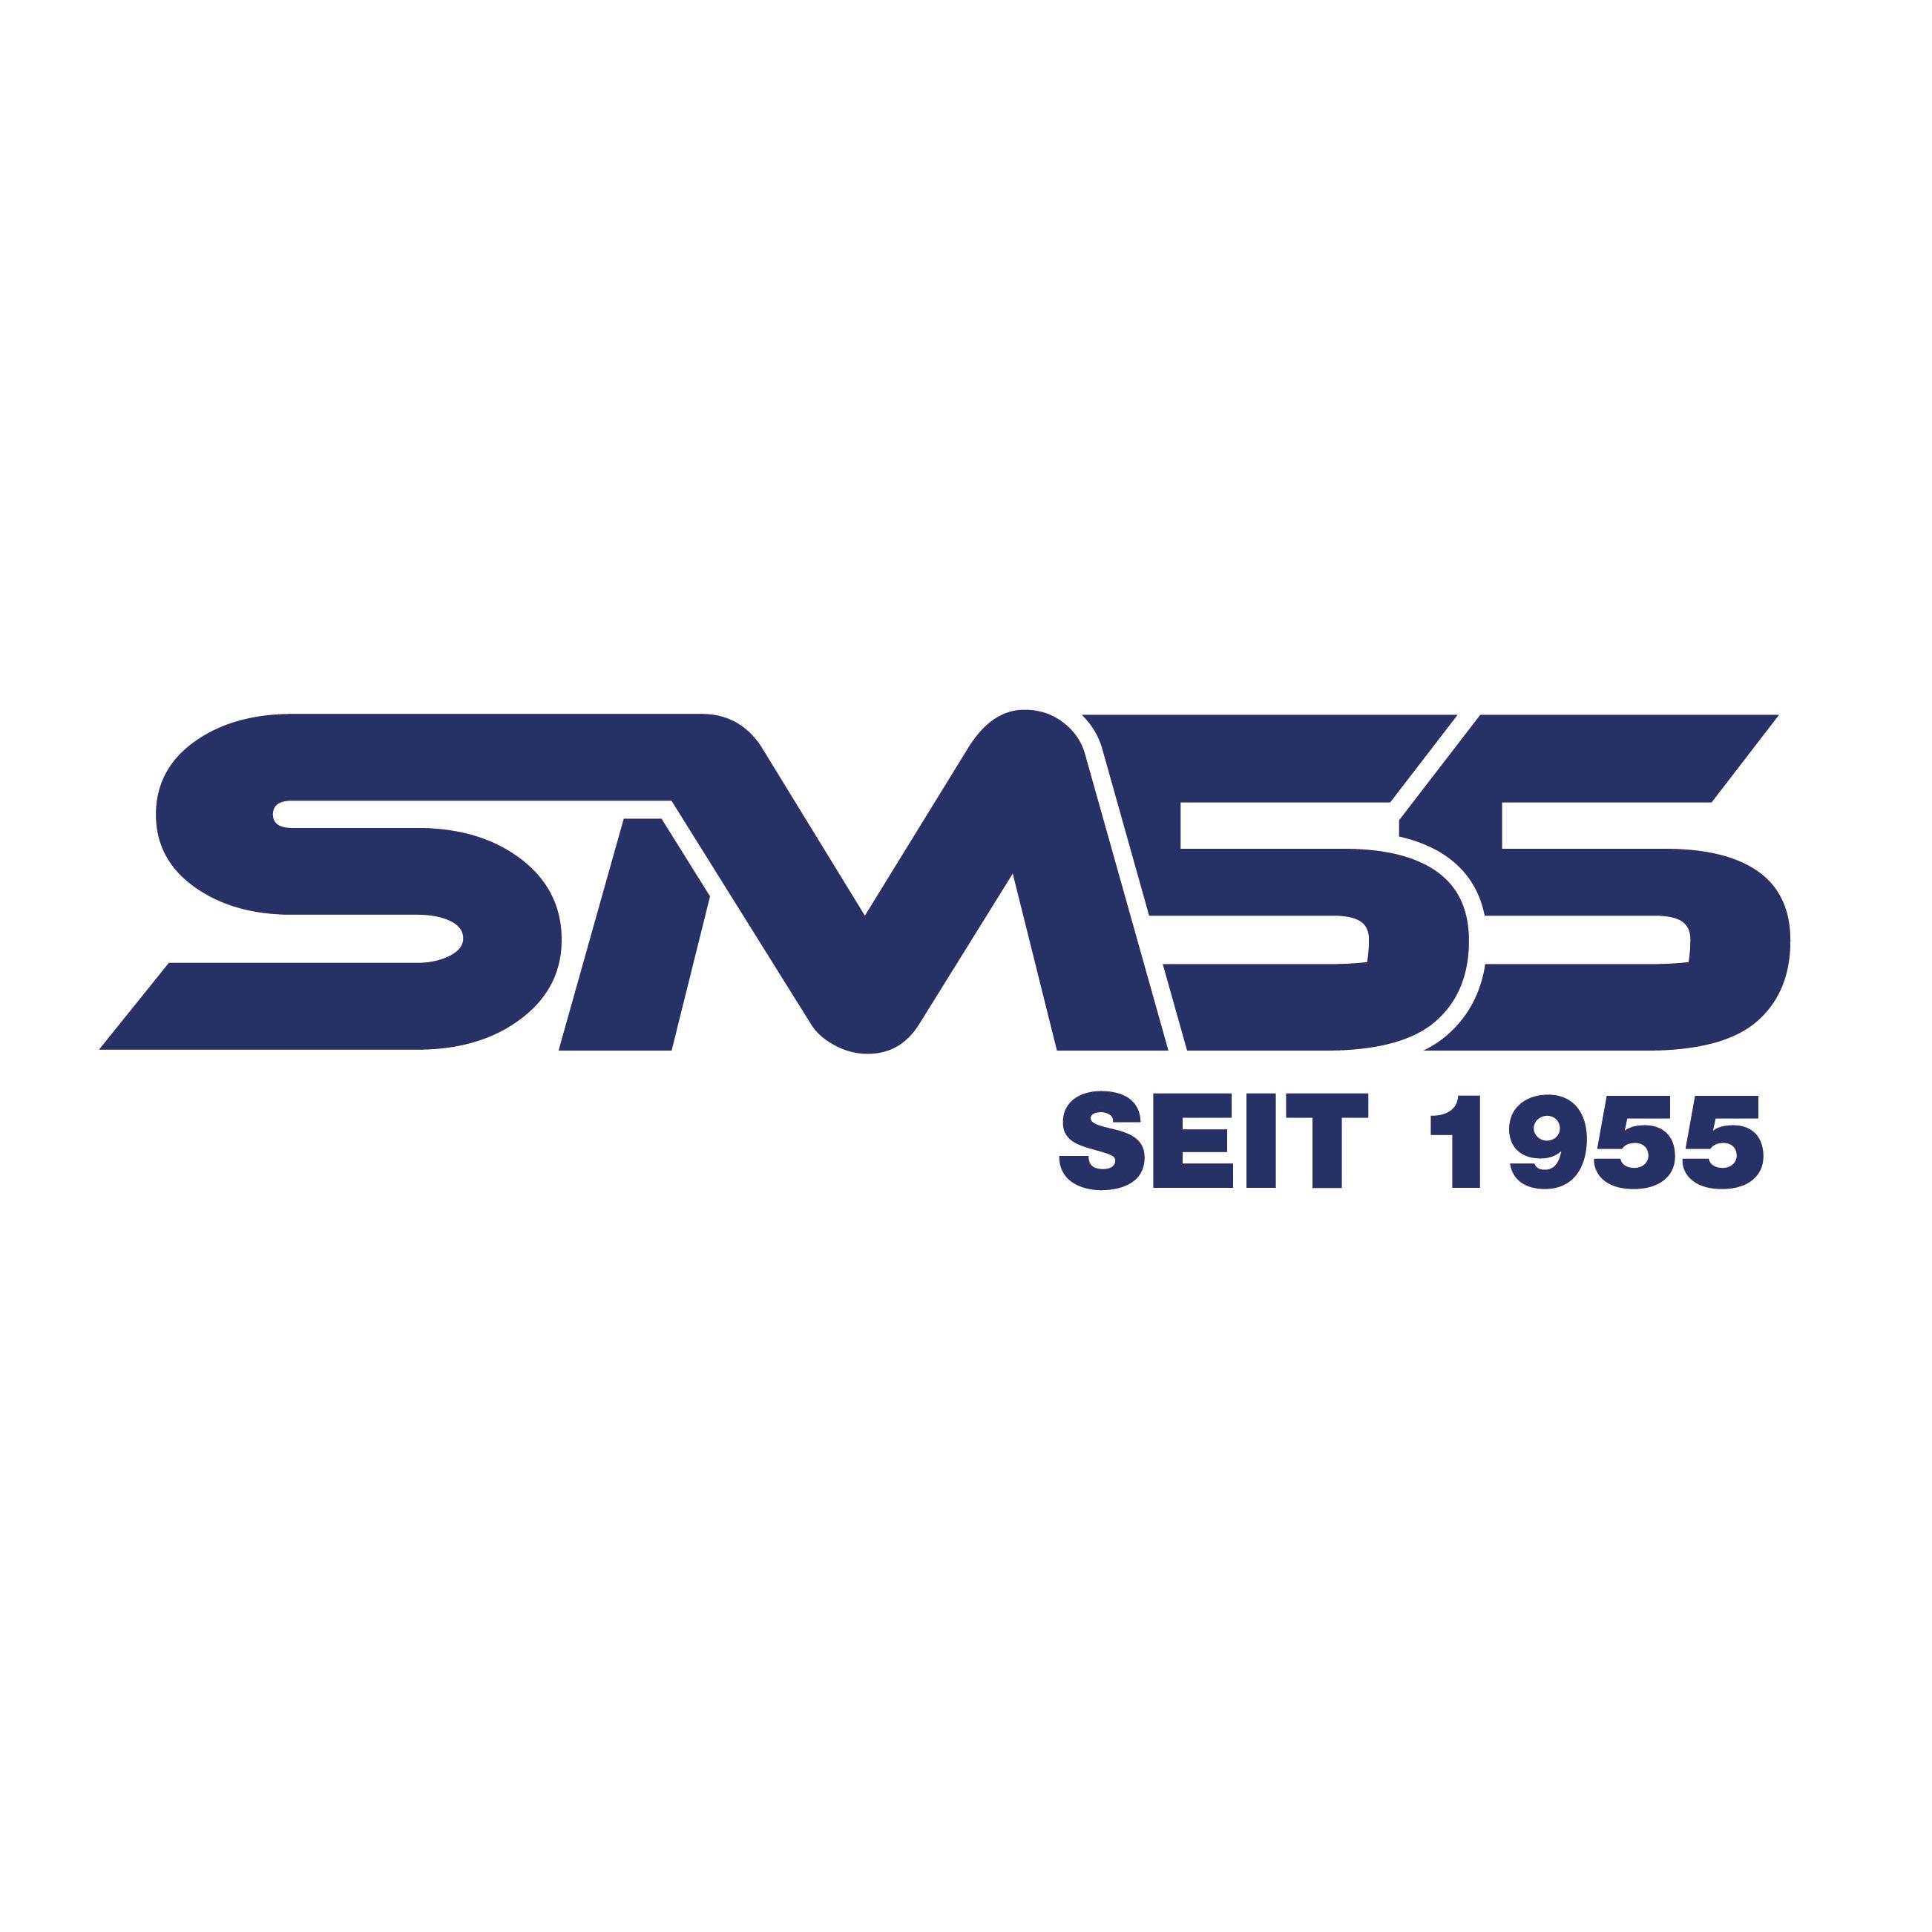 SM-55 Chemie Produktions und Großhandels GmbH